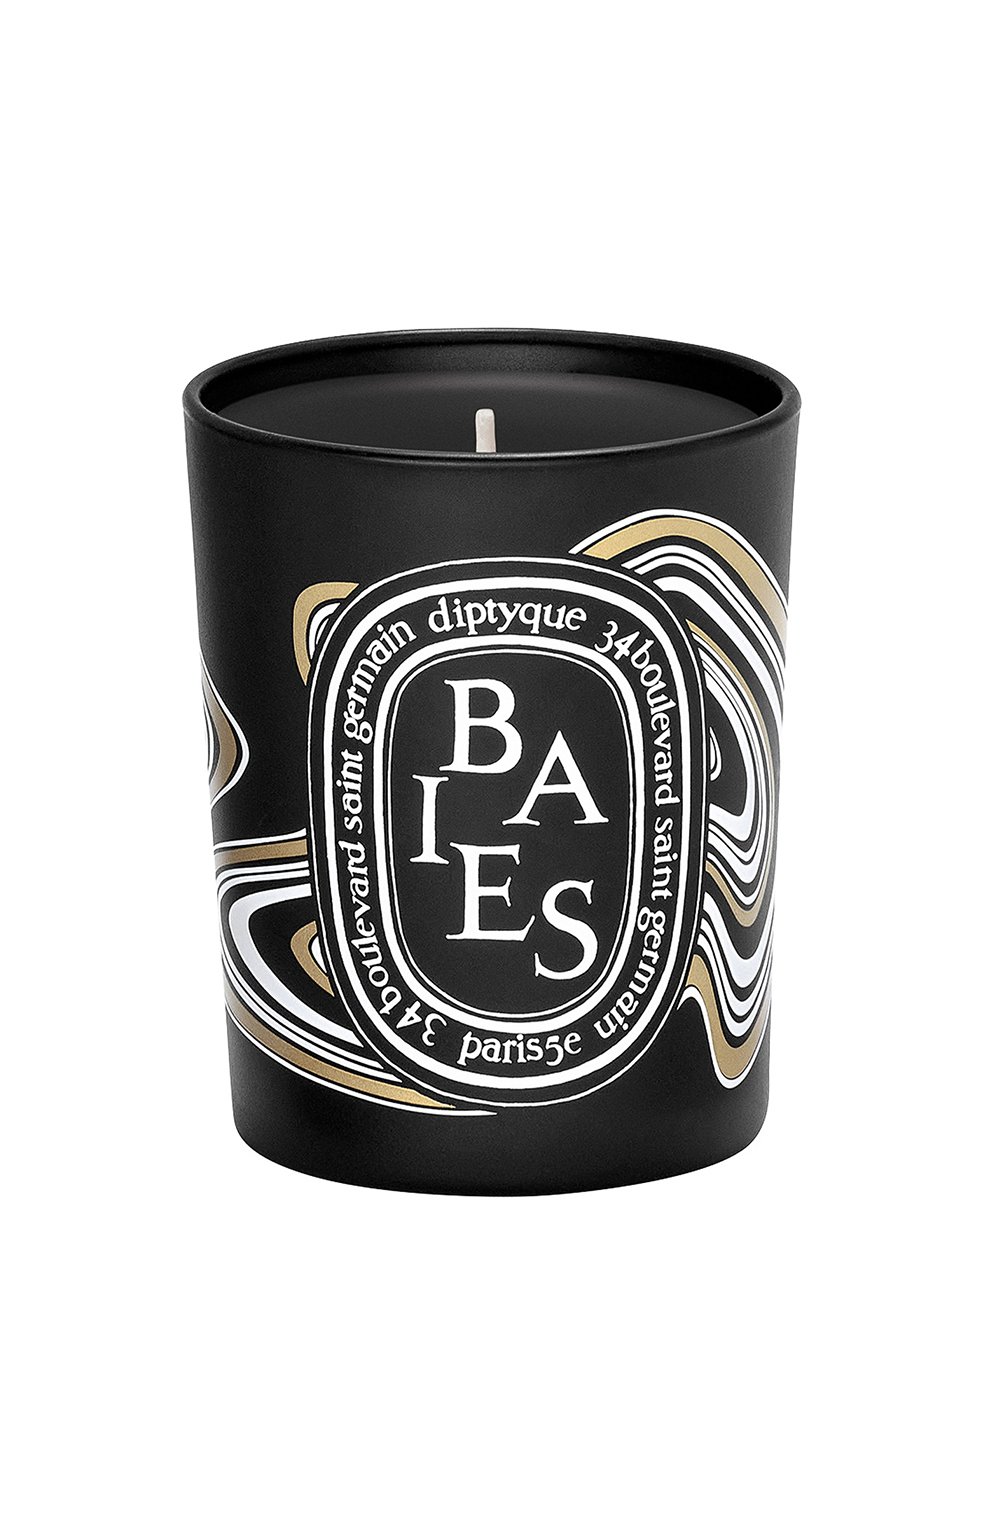 Свеча baies limited edition (190g) DIPTYQUE бесцветного цвета, арт. 3700431434456 | Фото 1 (Ограничения доставки: flammable)